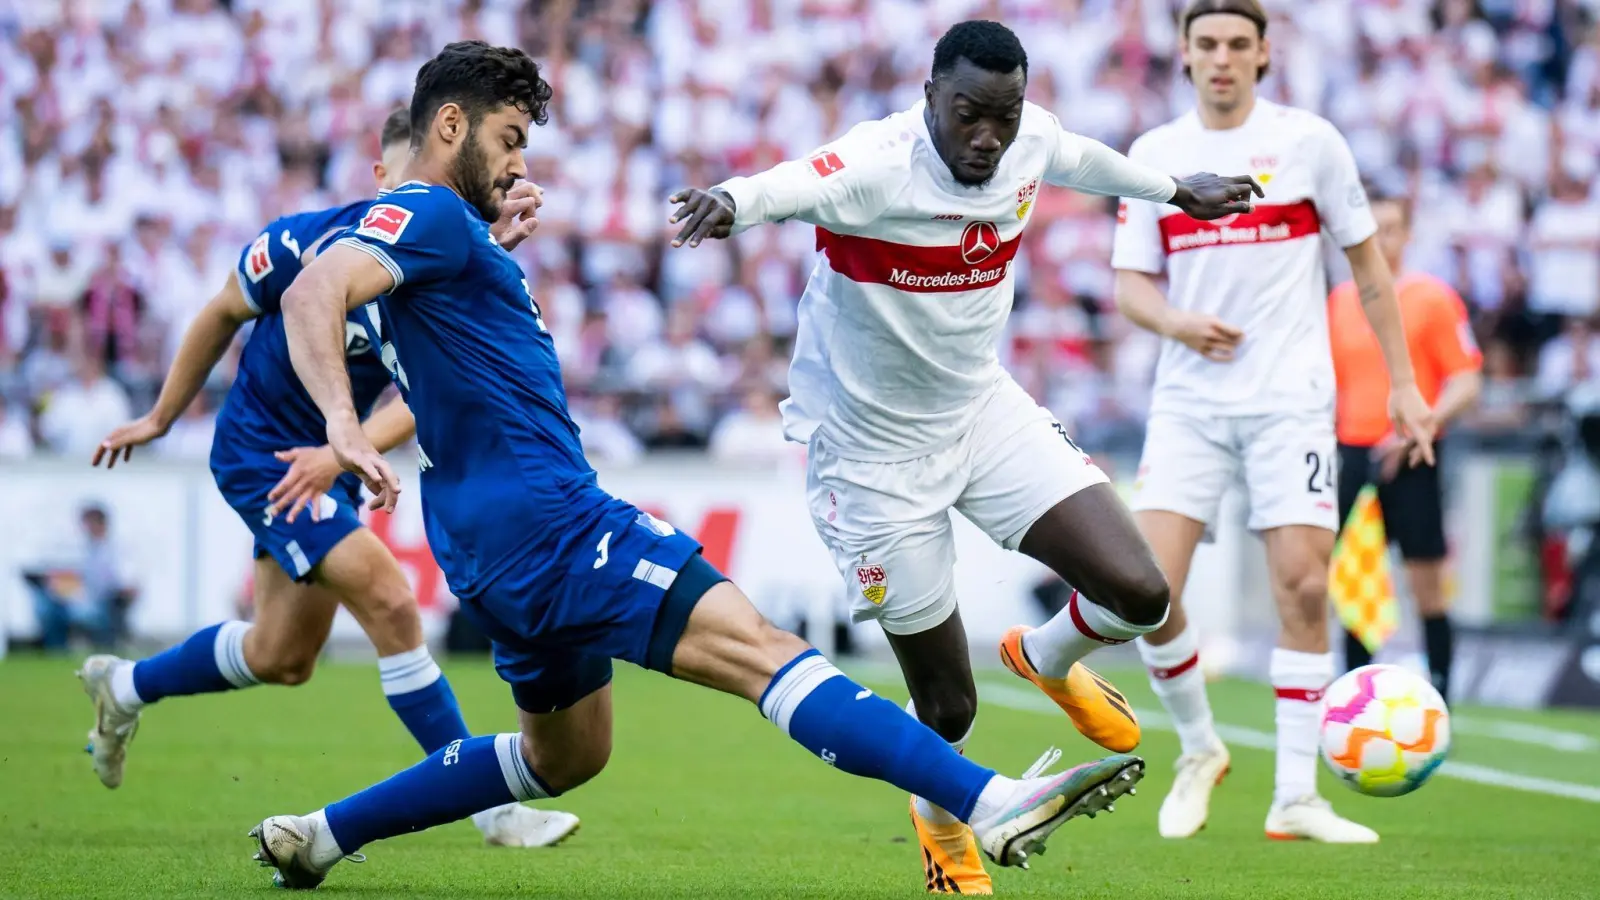 Nach einem 1:1-Remis gegen Hoffenheim  muss Silas Katompa Mvumpa (r) mit dem VfB Stuttgart den Gang in die Relegation antreten. (Foto: Tom Weller/dpa)